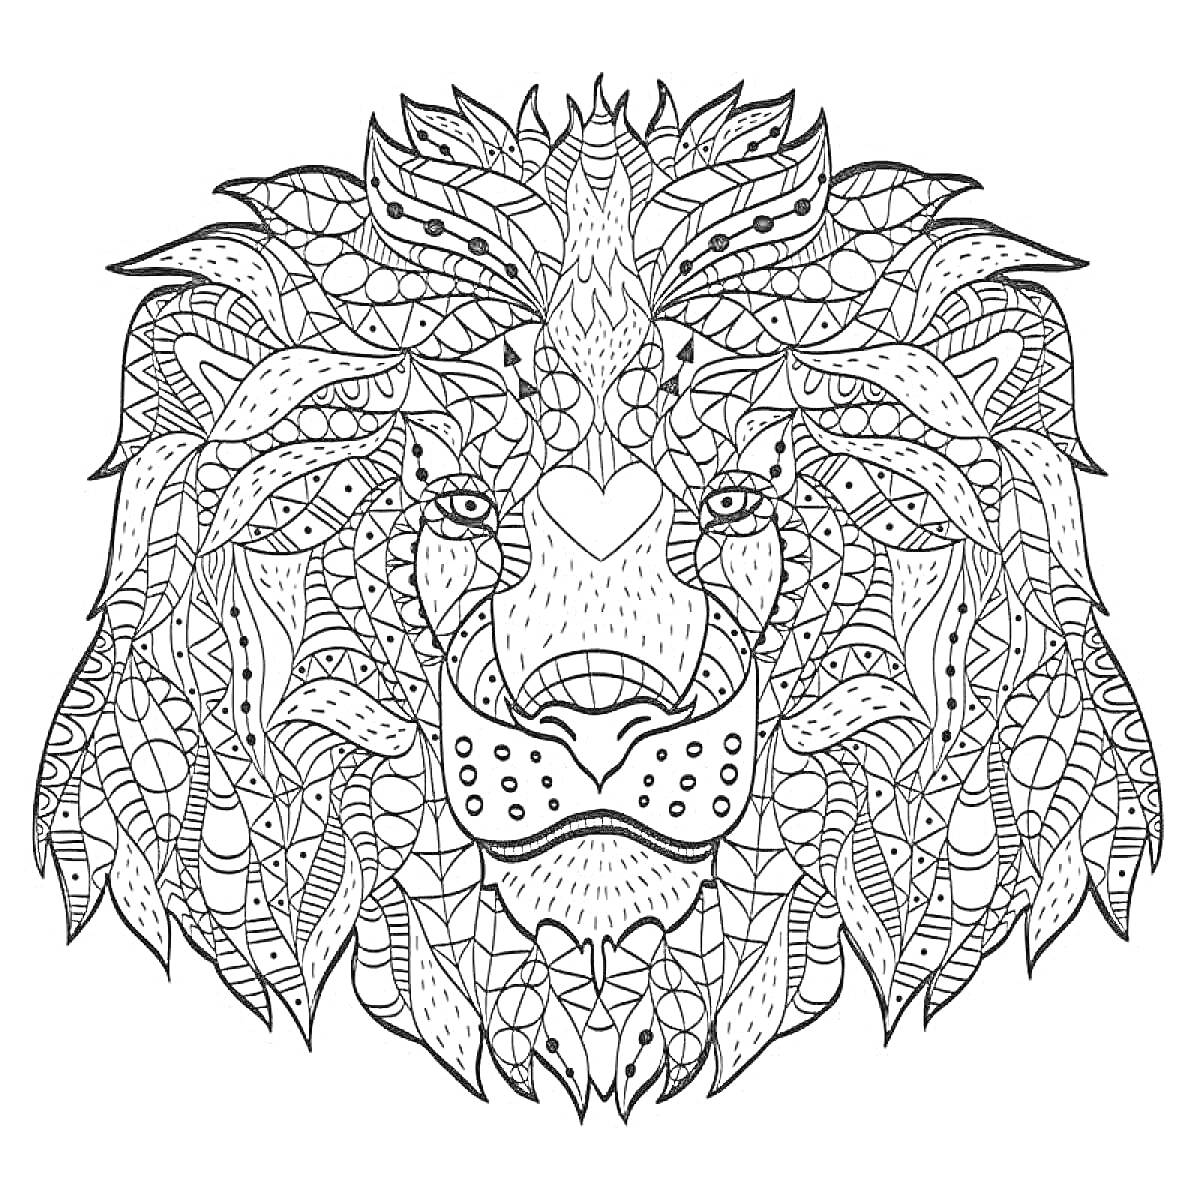 Антистресс раскраска с оригинальным узором львиного лица и множеством мелких деталей, включая геометрические формы, линии и текстуры.